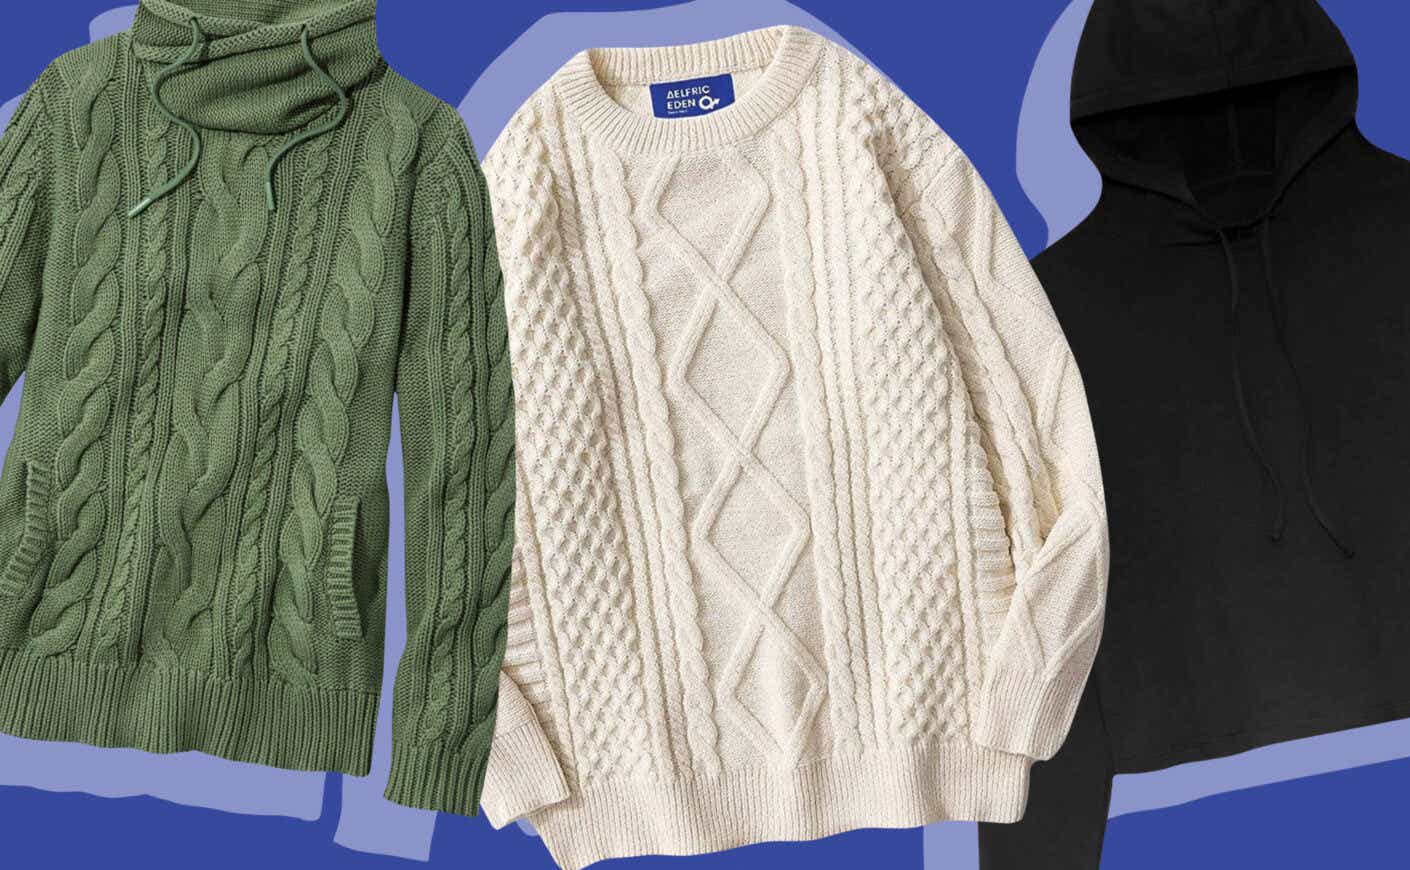 Oversized Sweaters for Women - Macy's